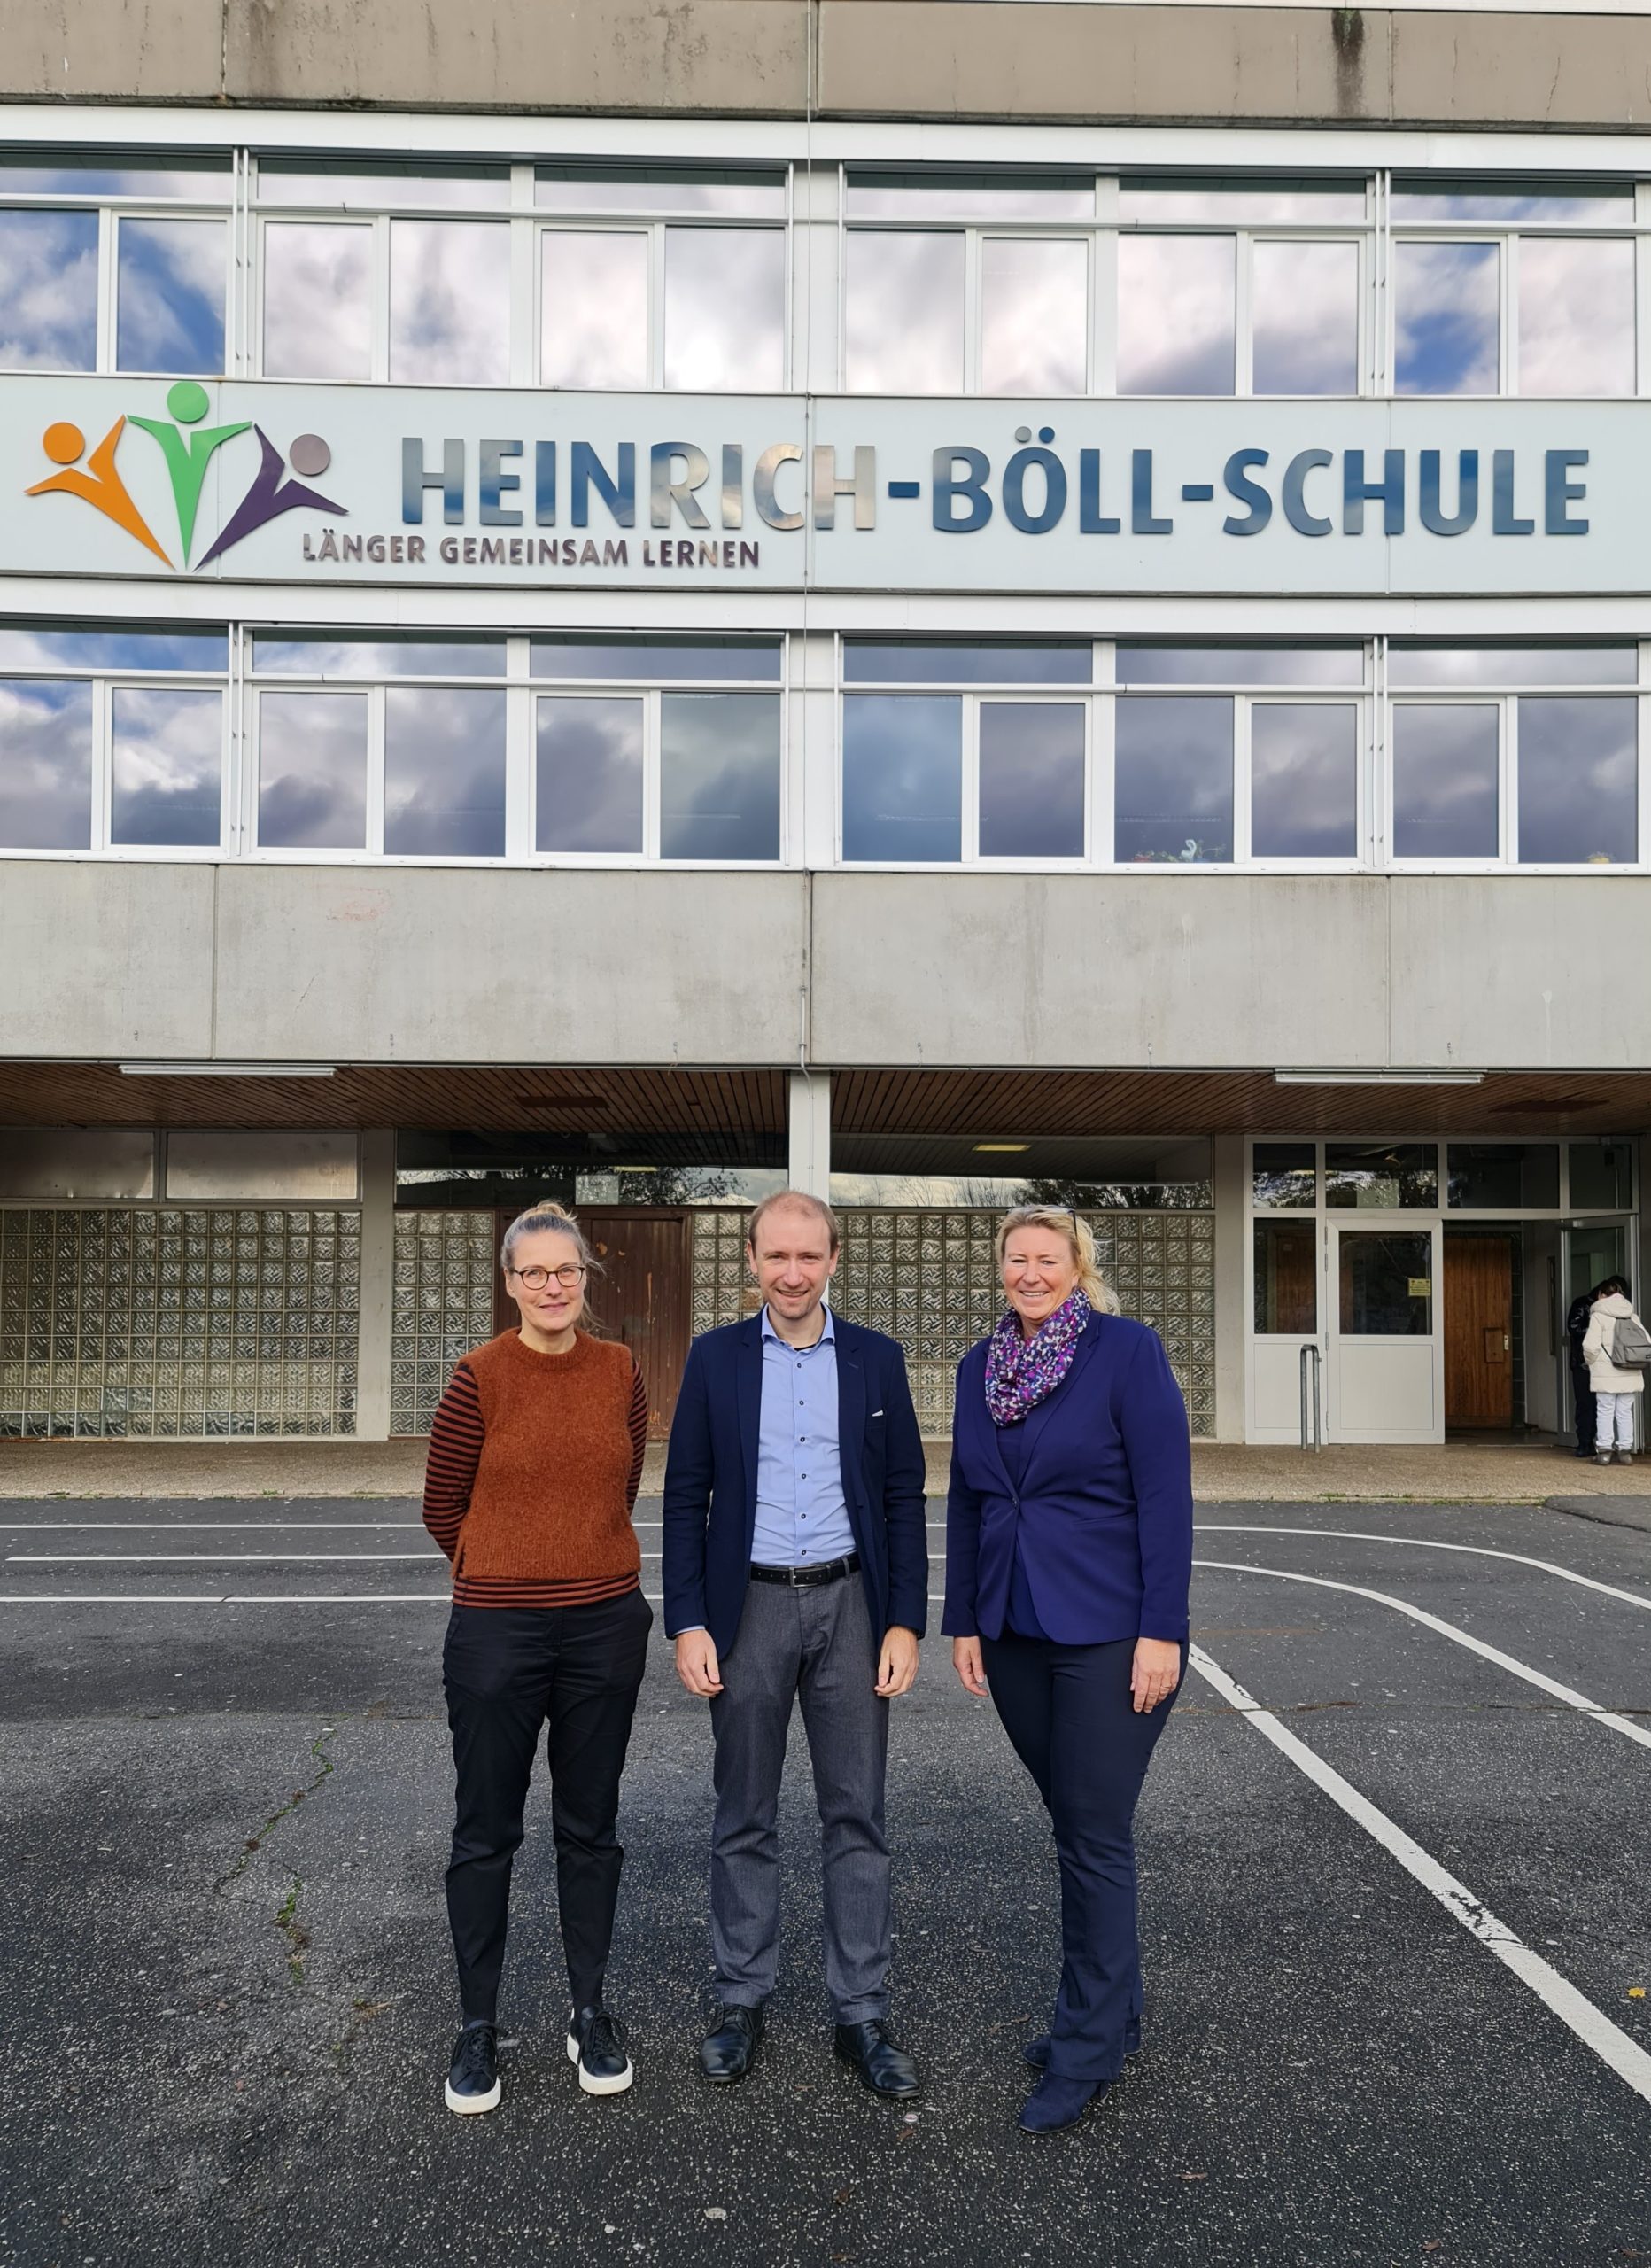 Heinrich-Böll-Schule - Länger zusammen lernen